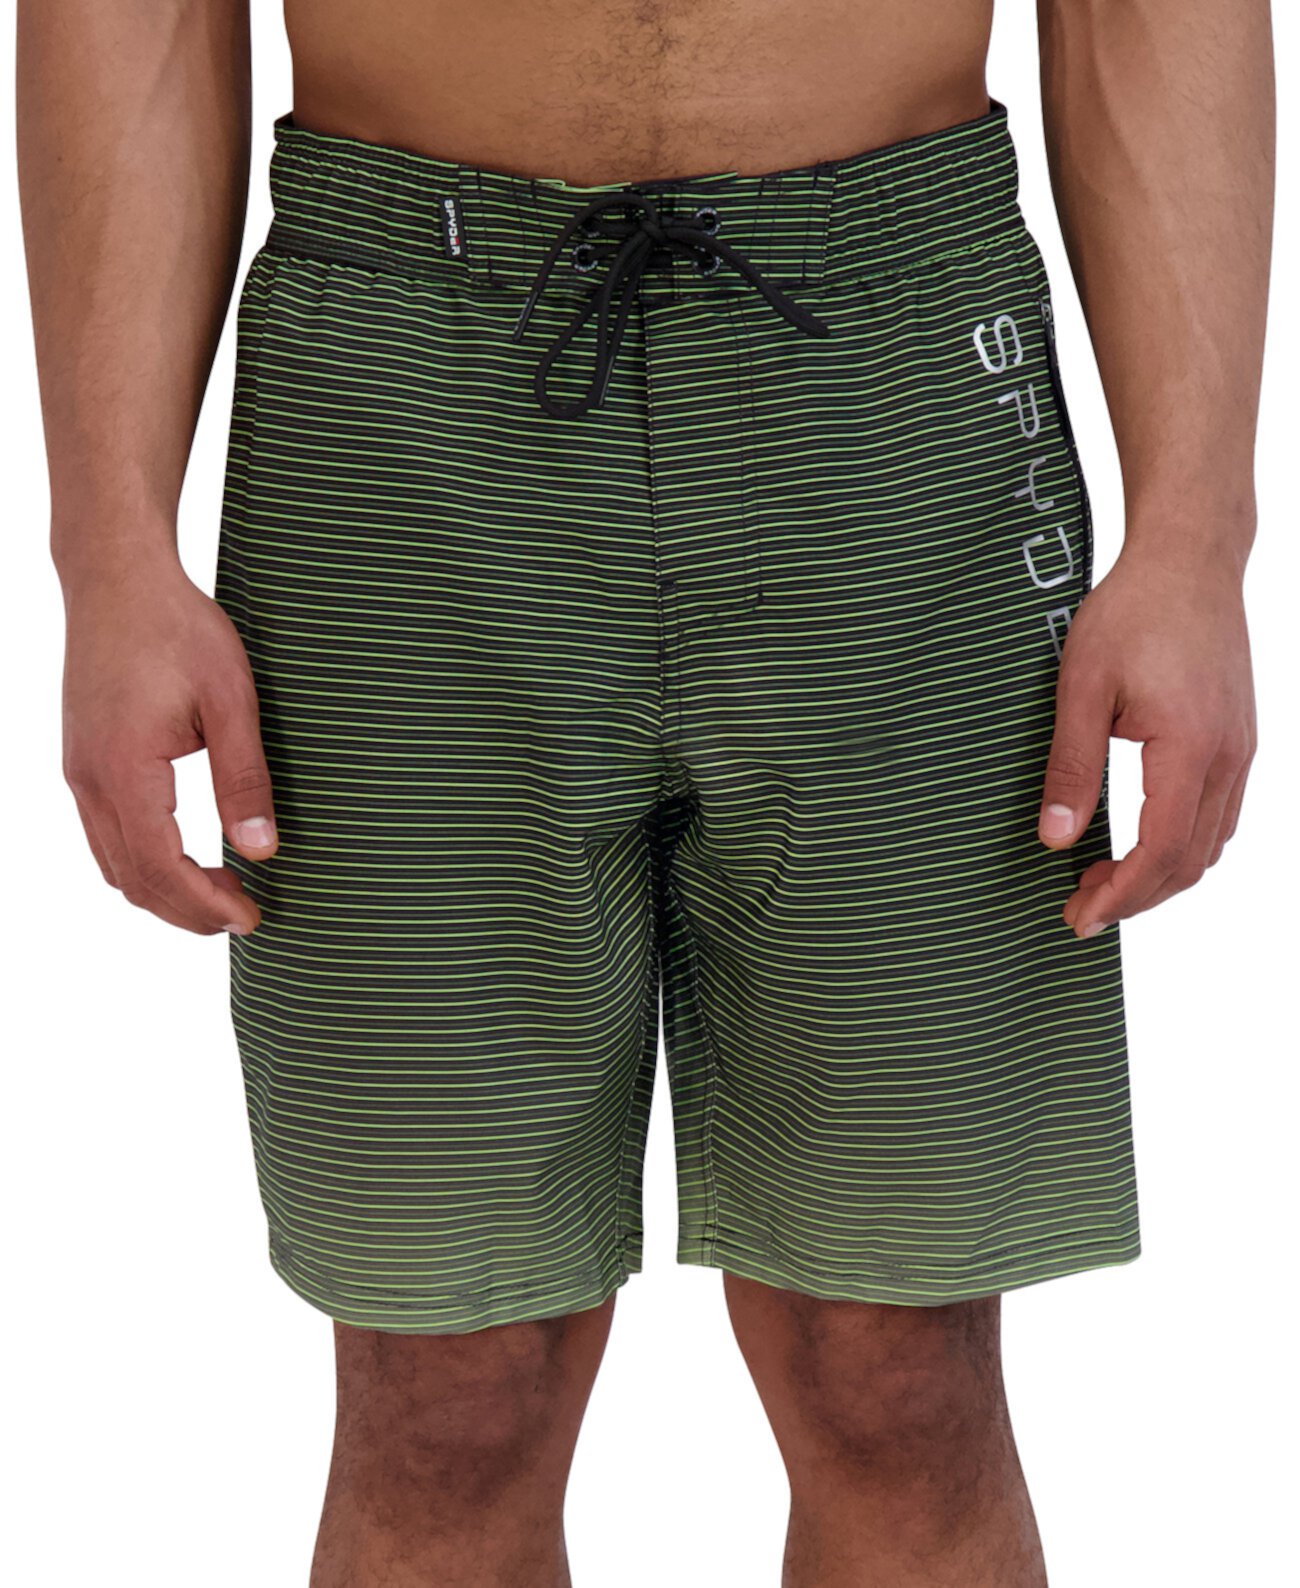 Мужские плавательные шорты E-Board 9 дюймов Spyder